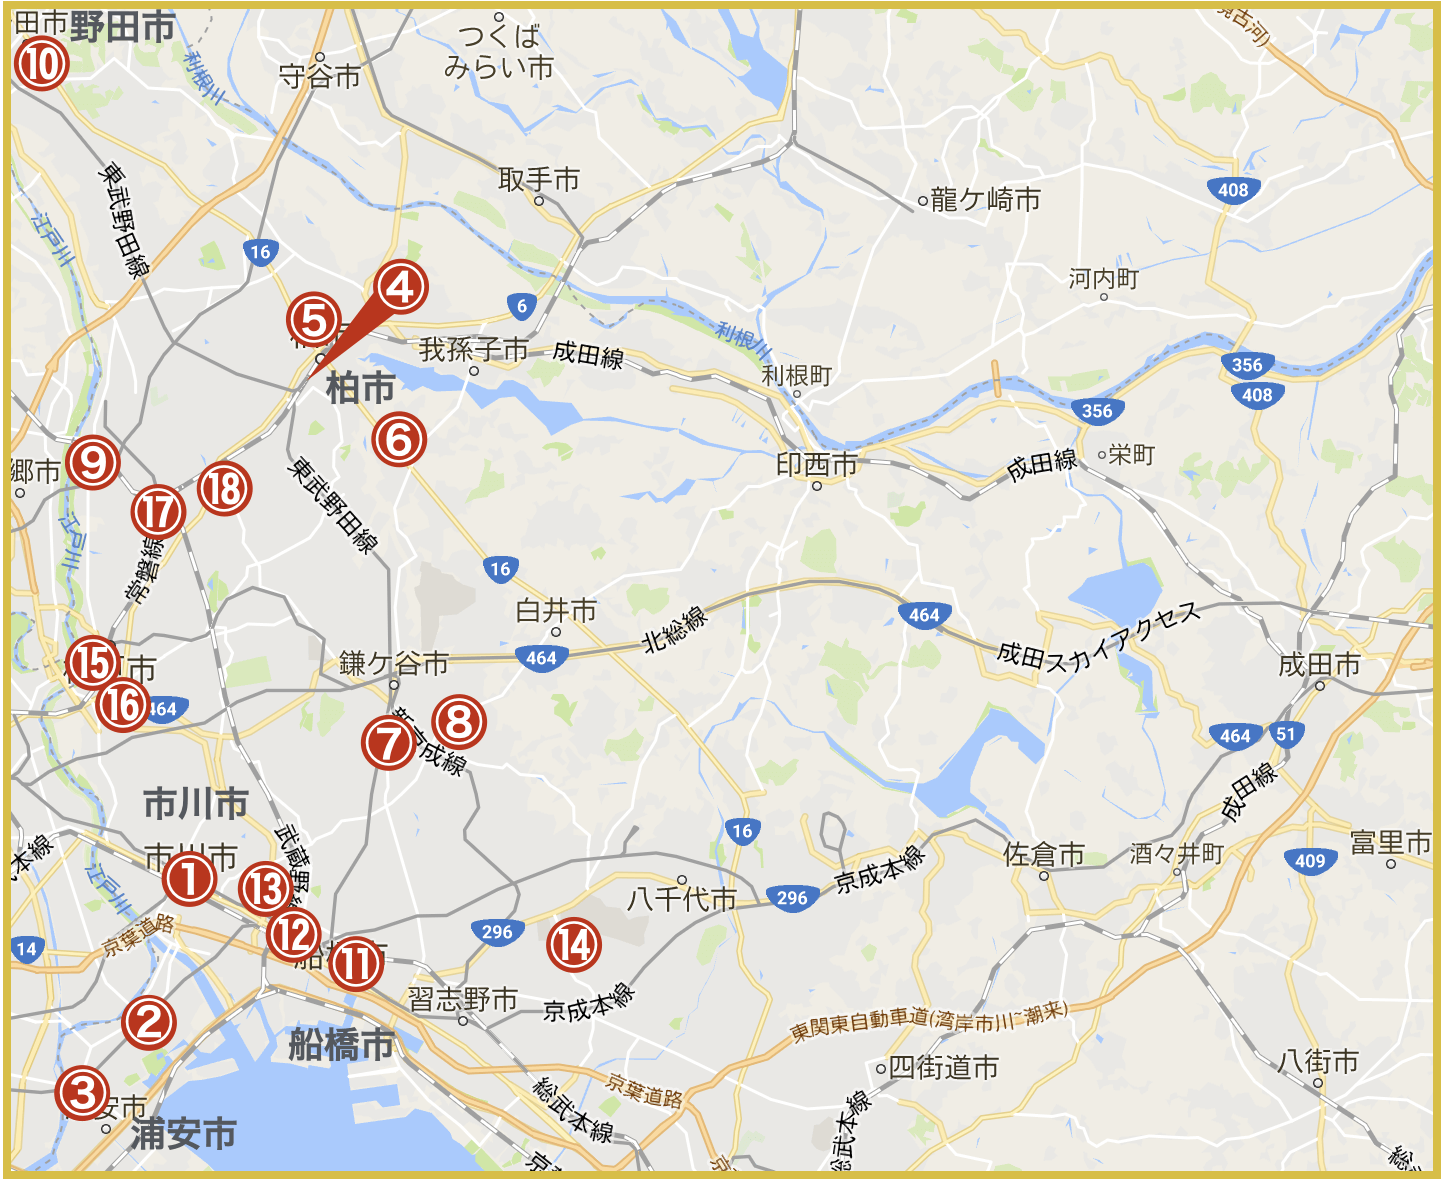 千葉県西地域にあるアイフル店舗・ATMの位置（2020年版）